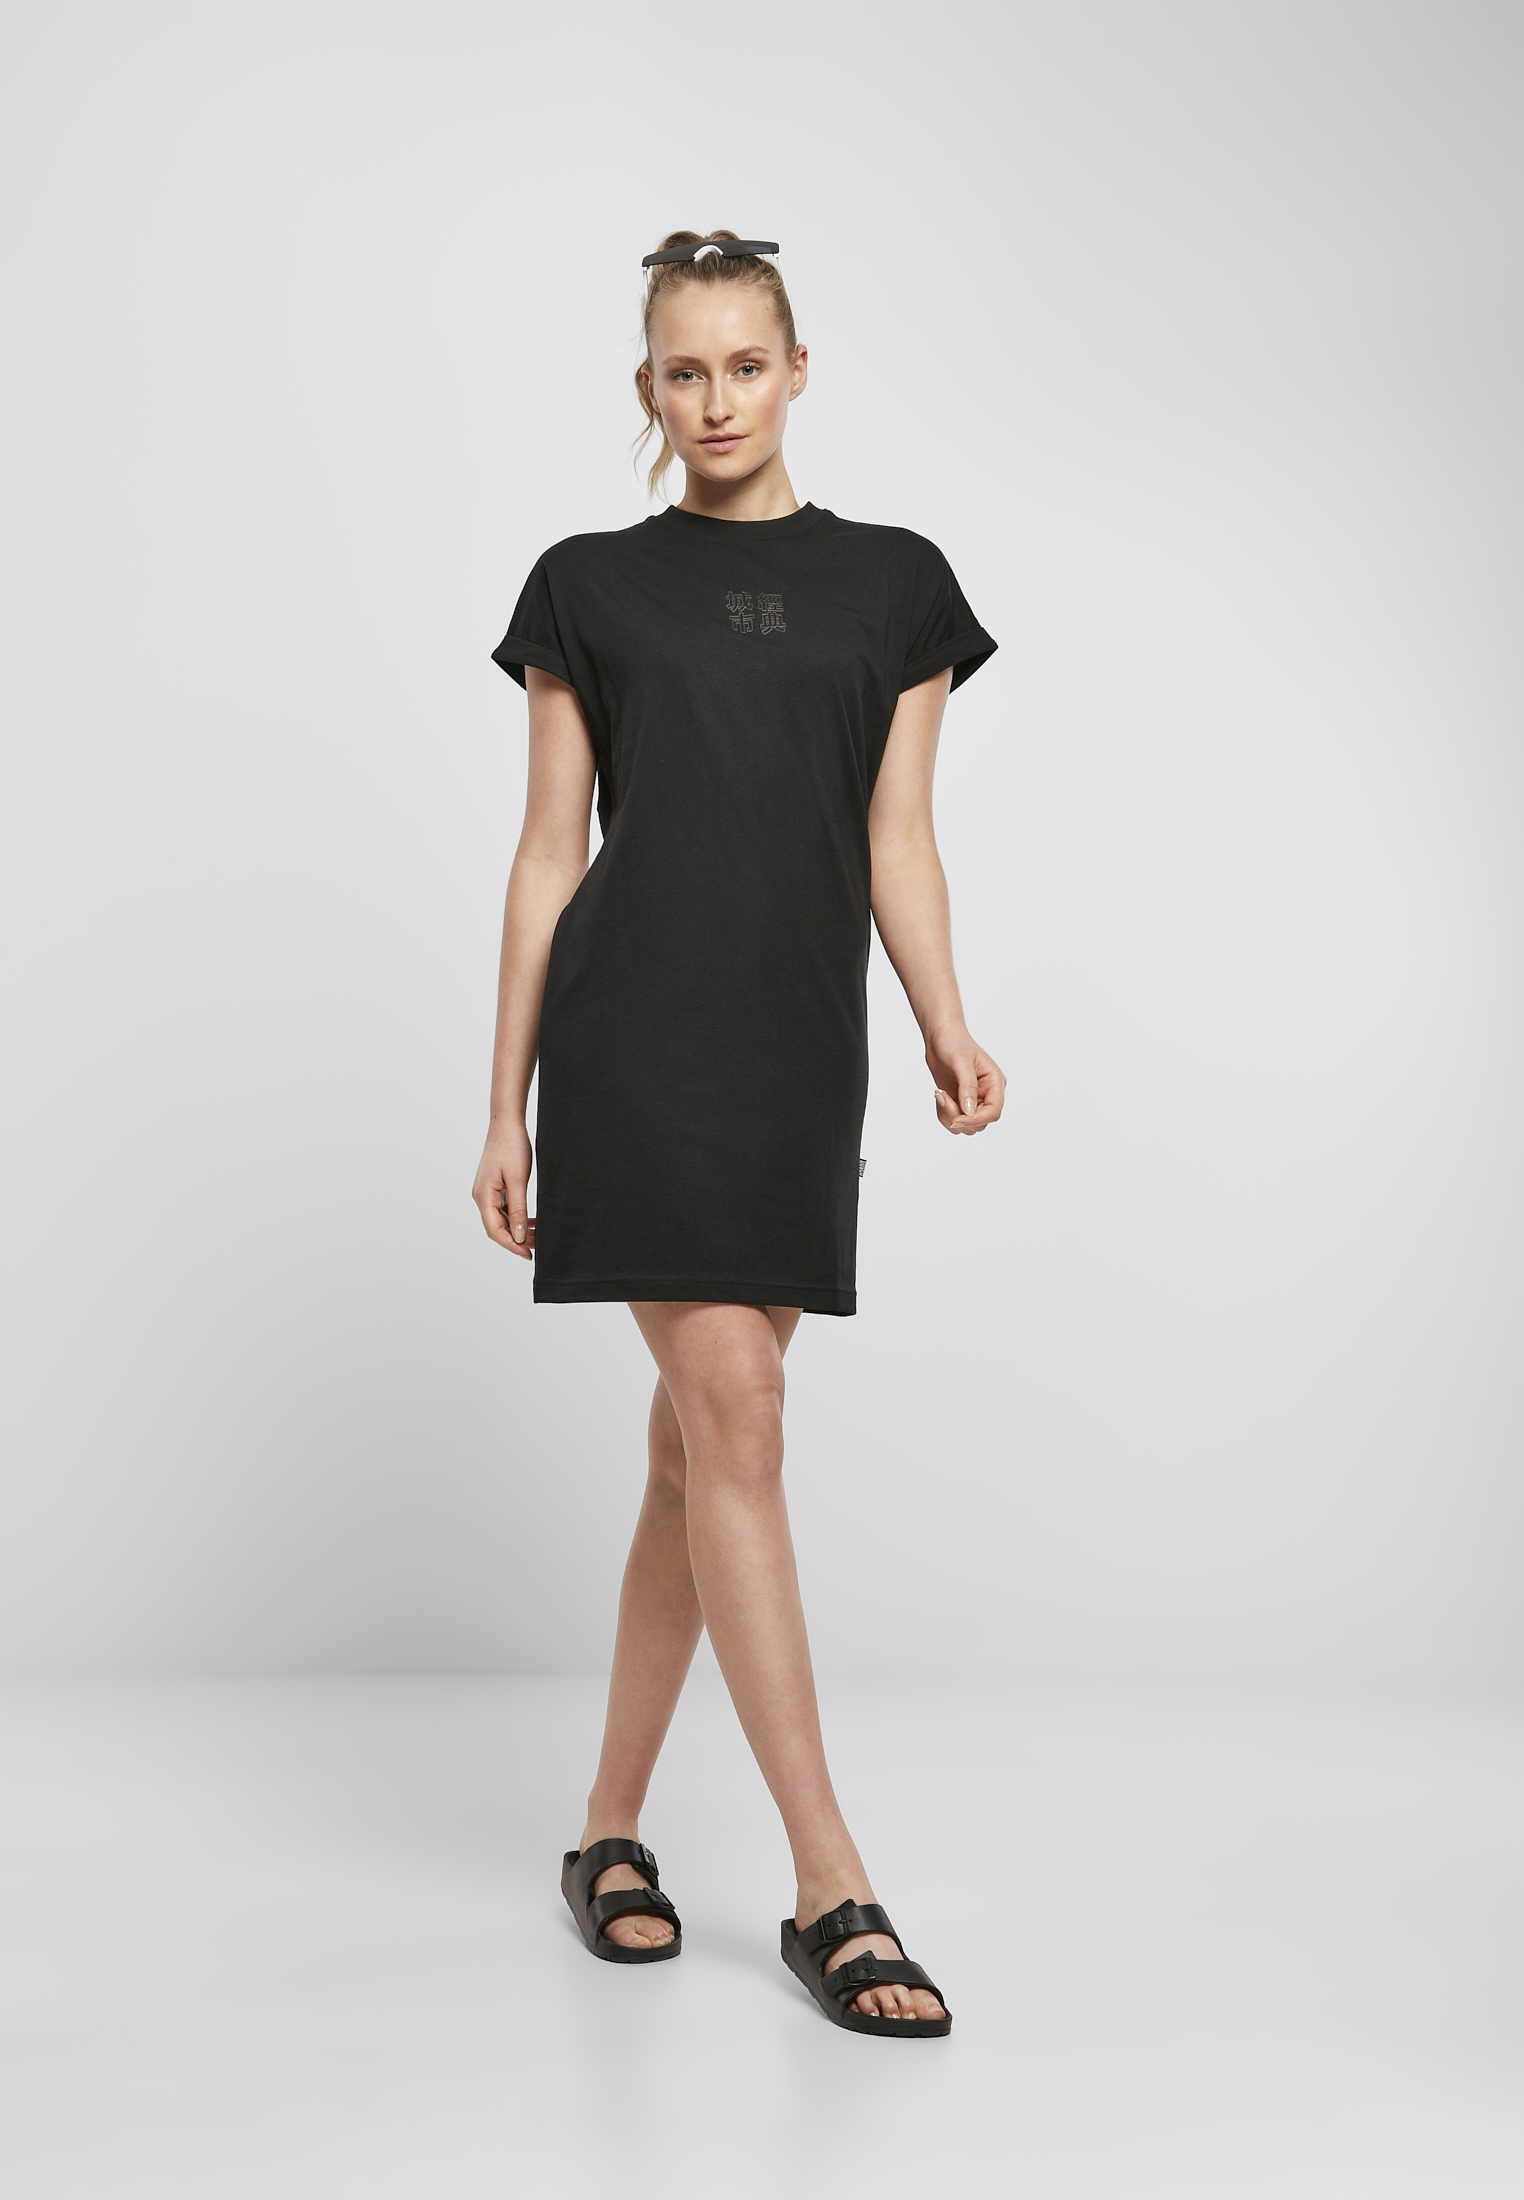 Kleider & R?cke Ladies Cut On Sleeve Printed Tee Dress in Farbe black/black